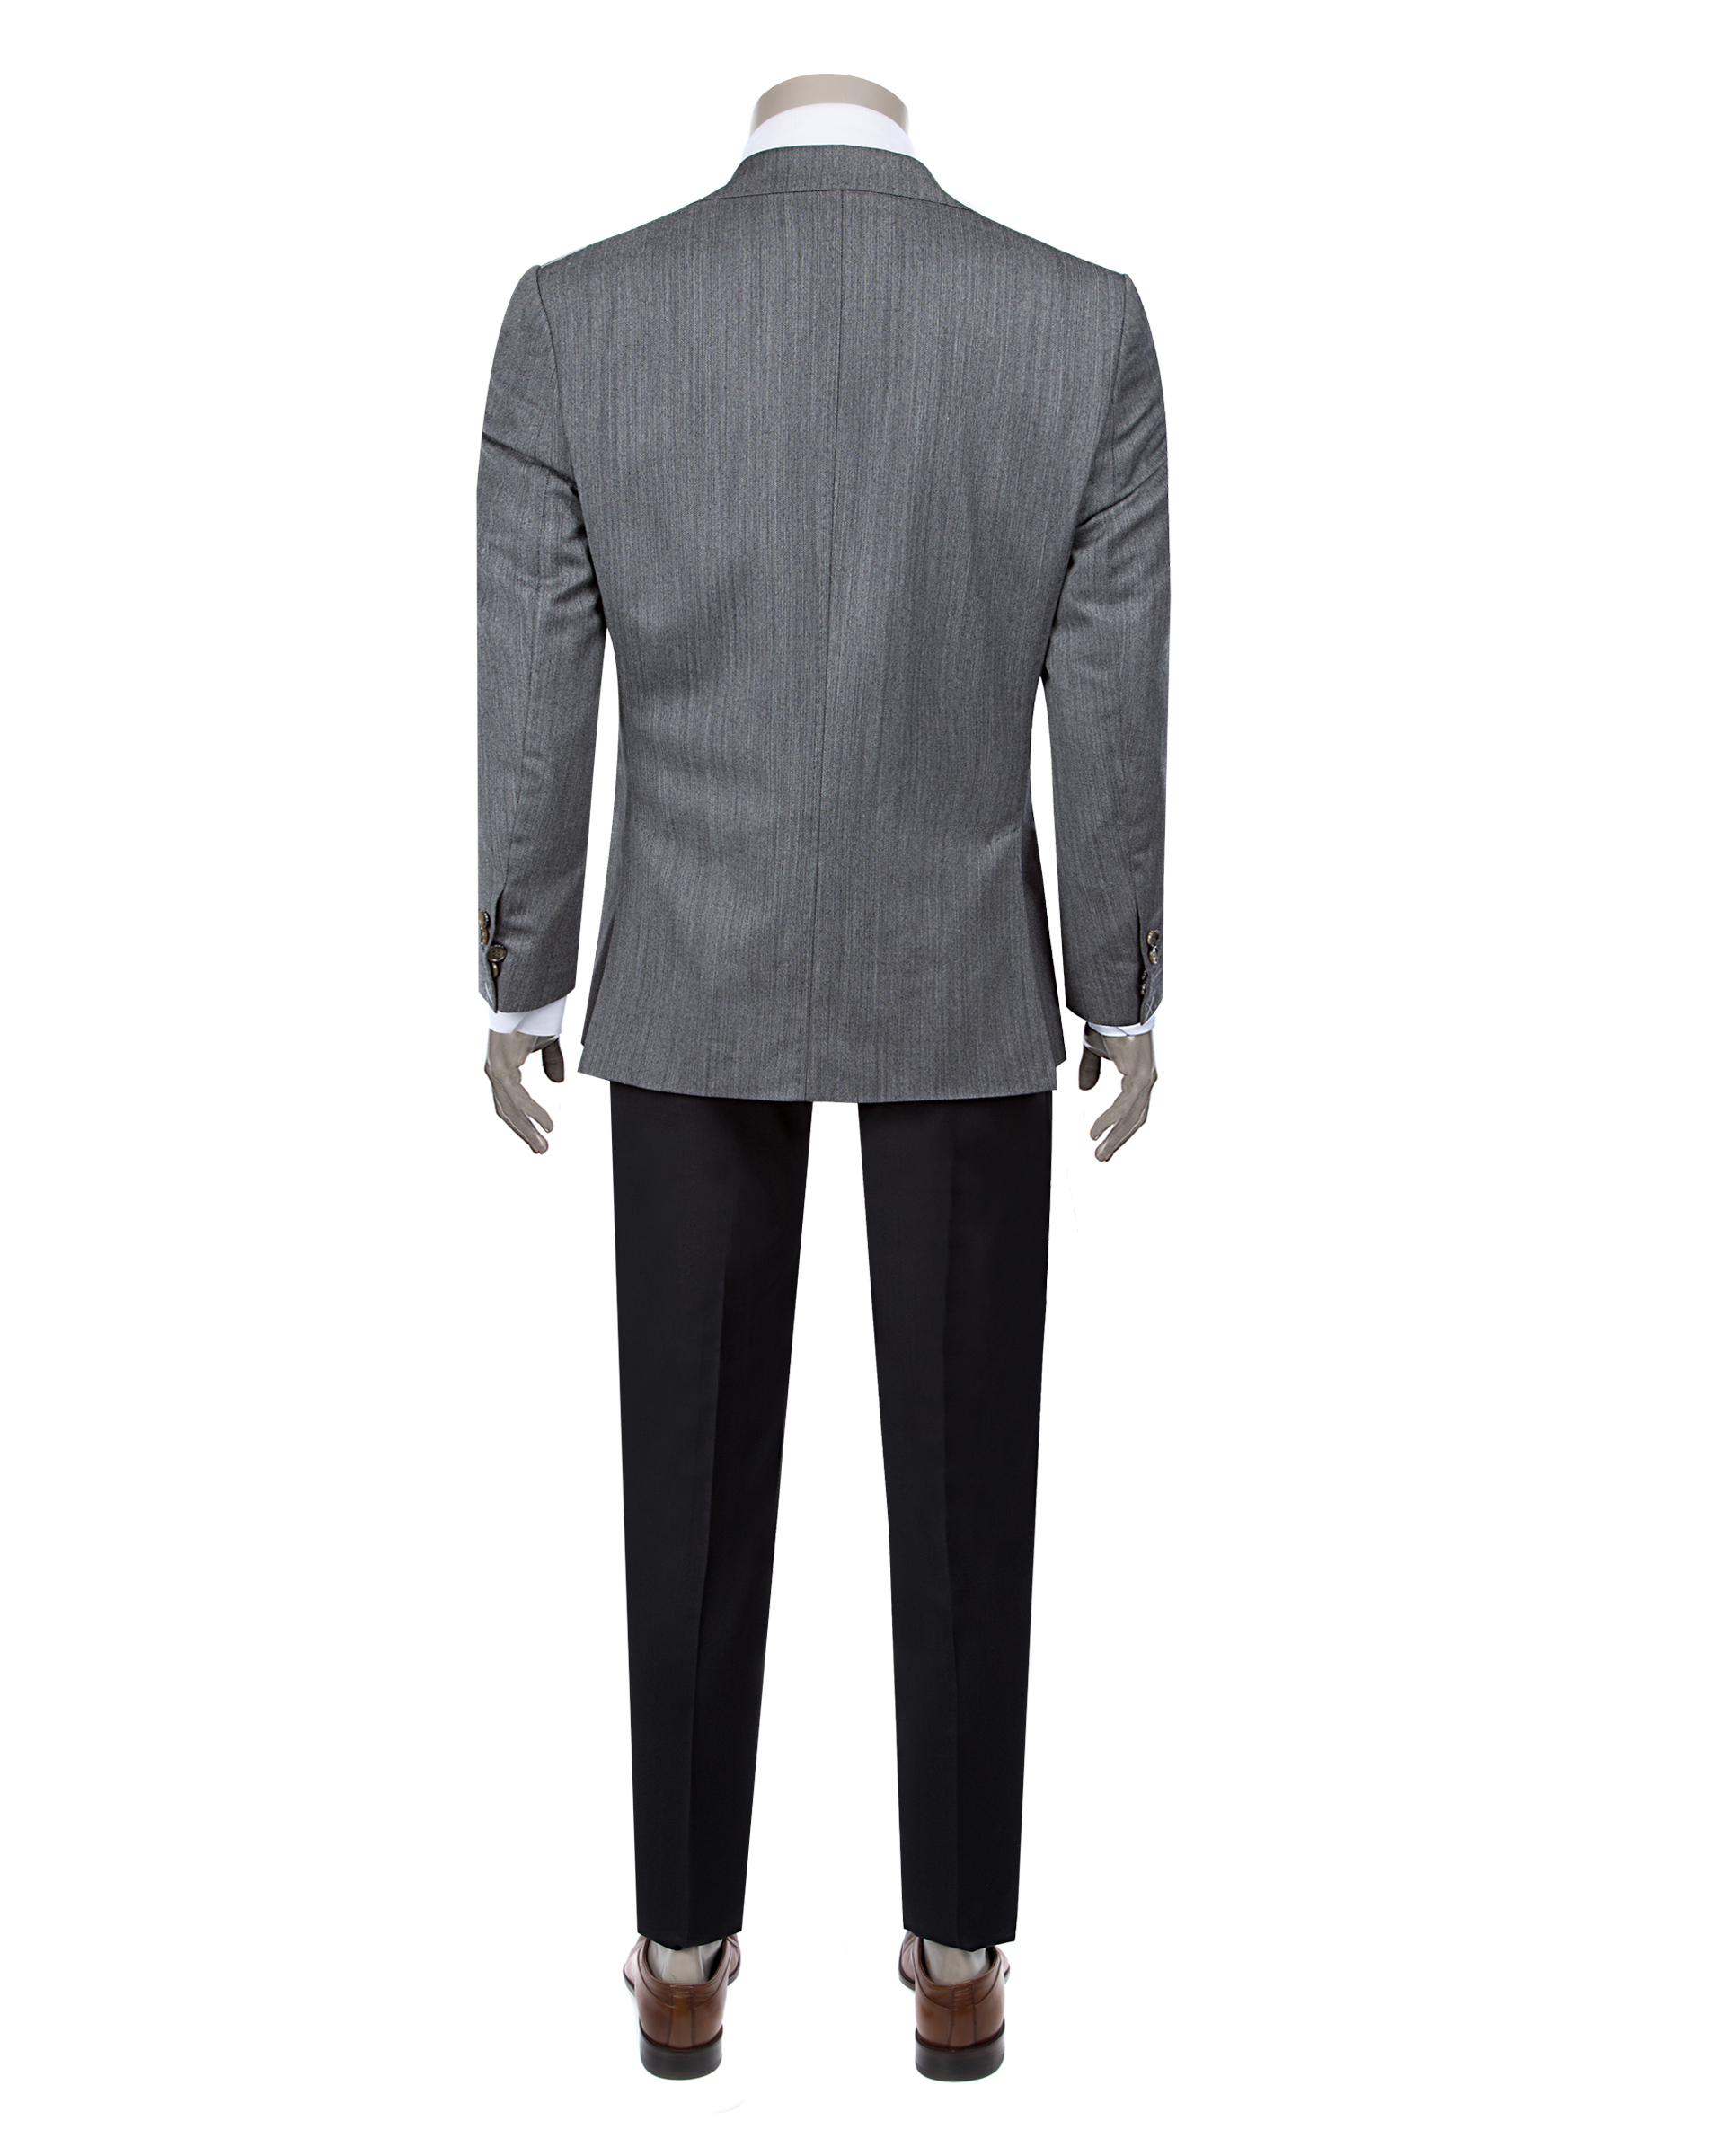 Damat Tween Damat Regular Fit Antrasit Kombinli Takım Elbise. 9